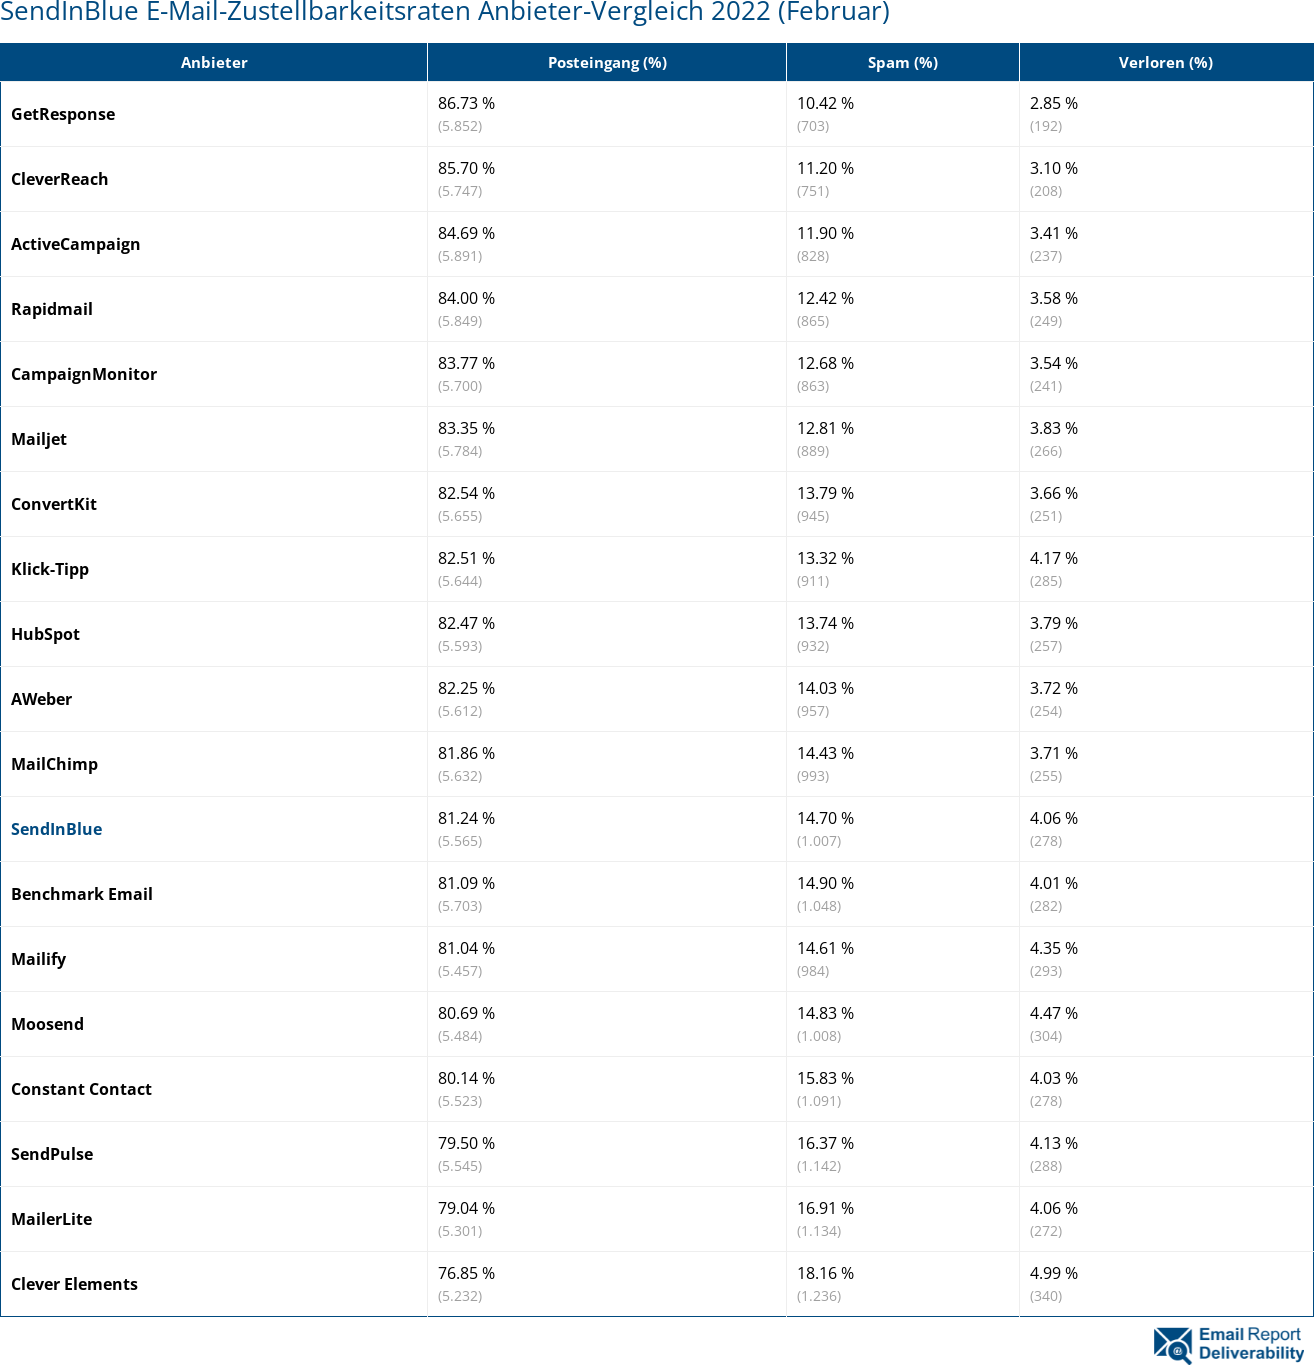 SendInBlue E-Mail-Zustellbarkeitsraten Anbieter-Vergleich 2022 (Februar)